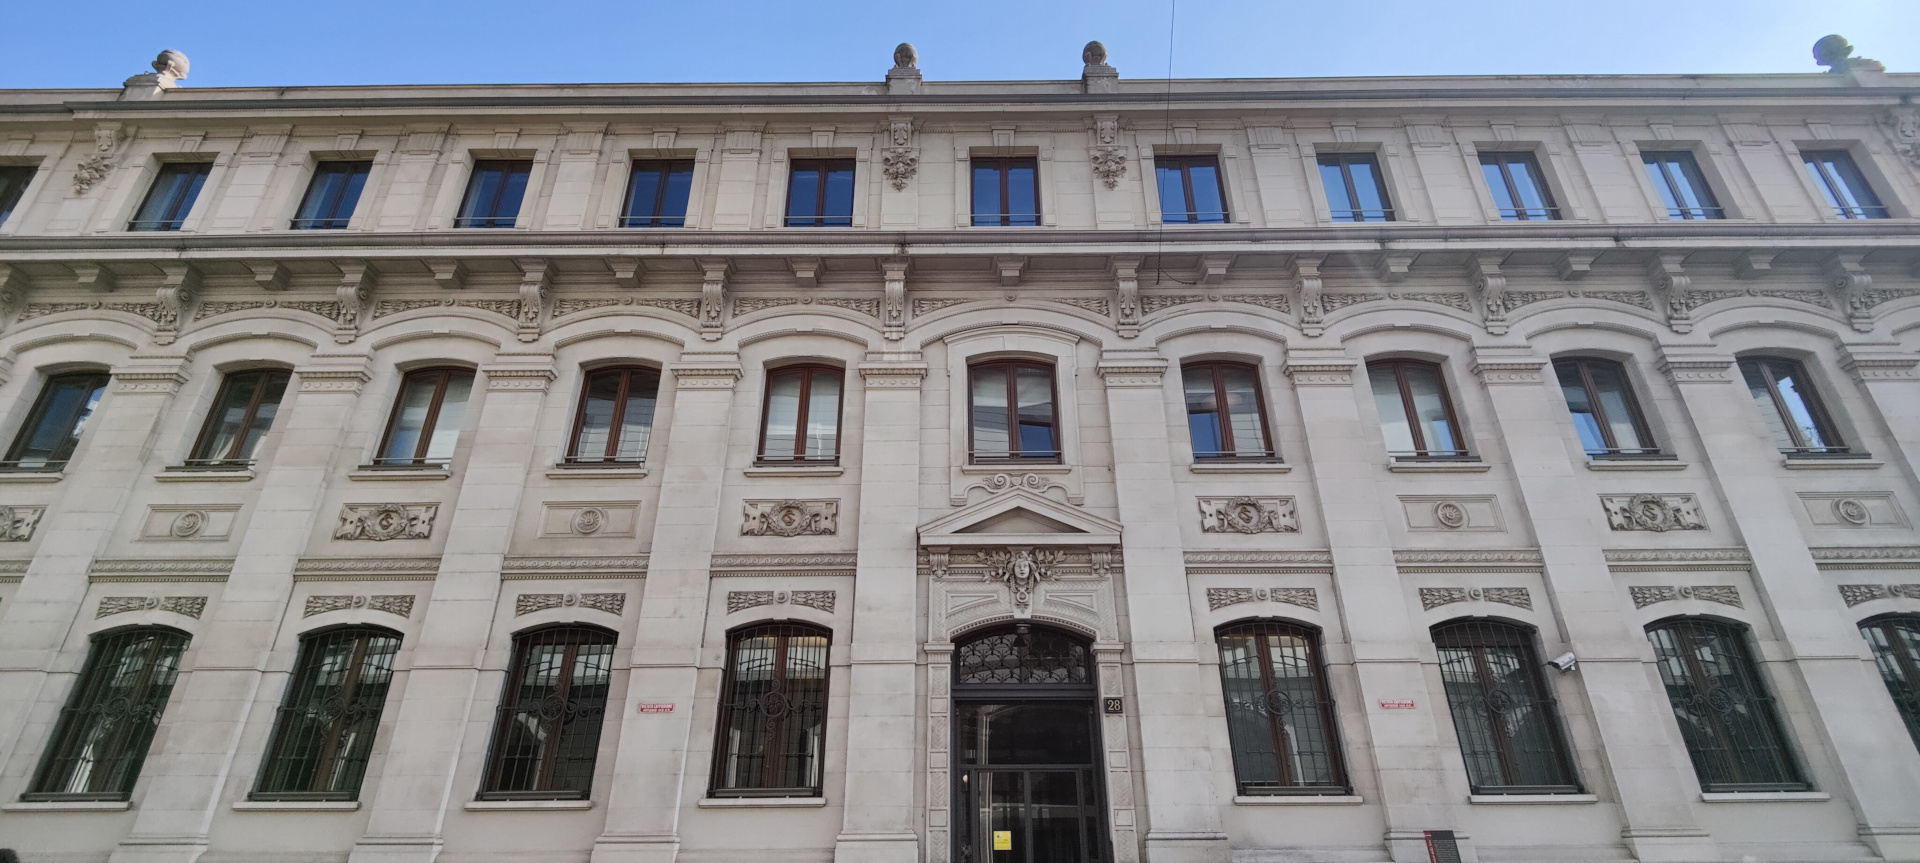 The Corriere della Sera building